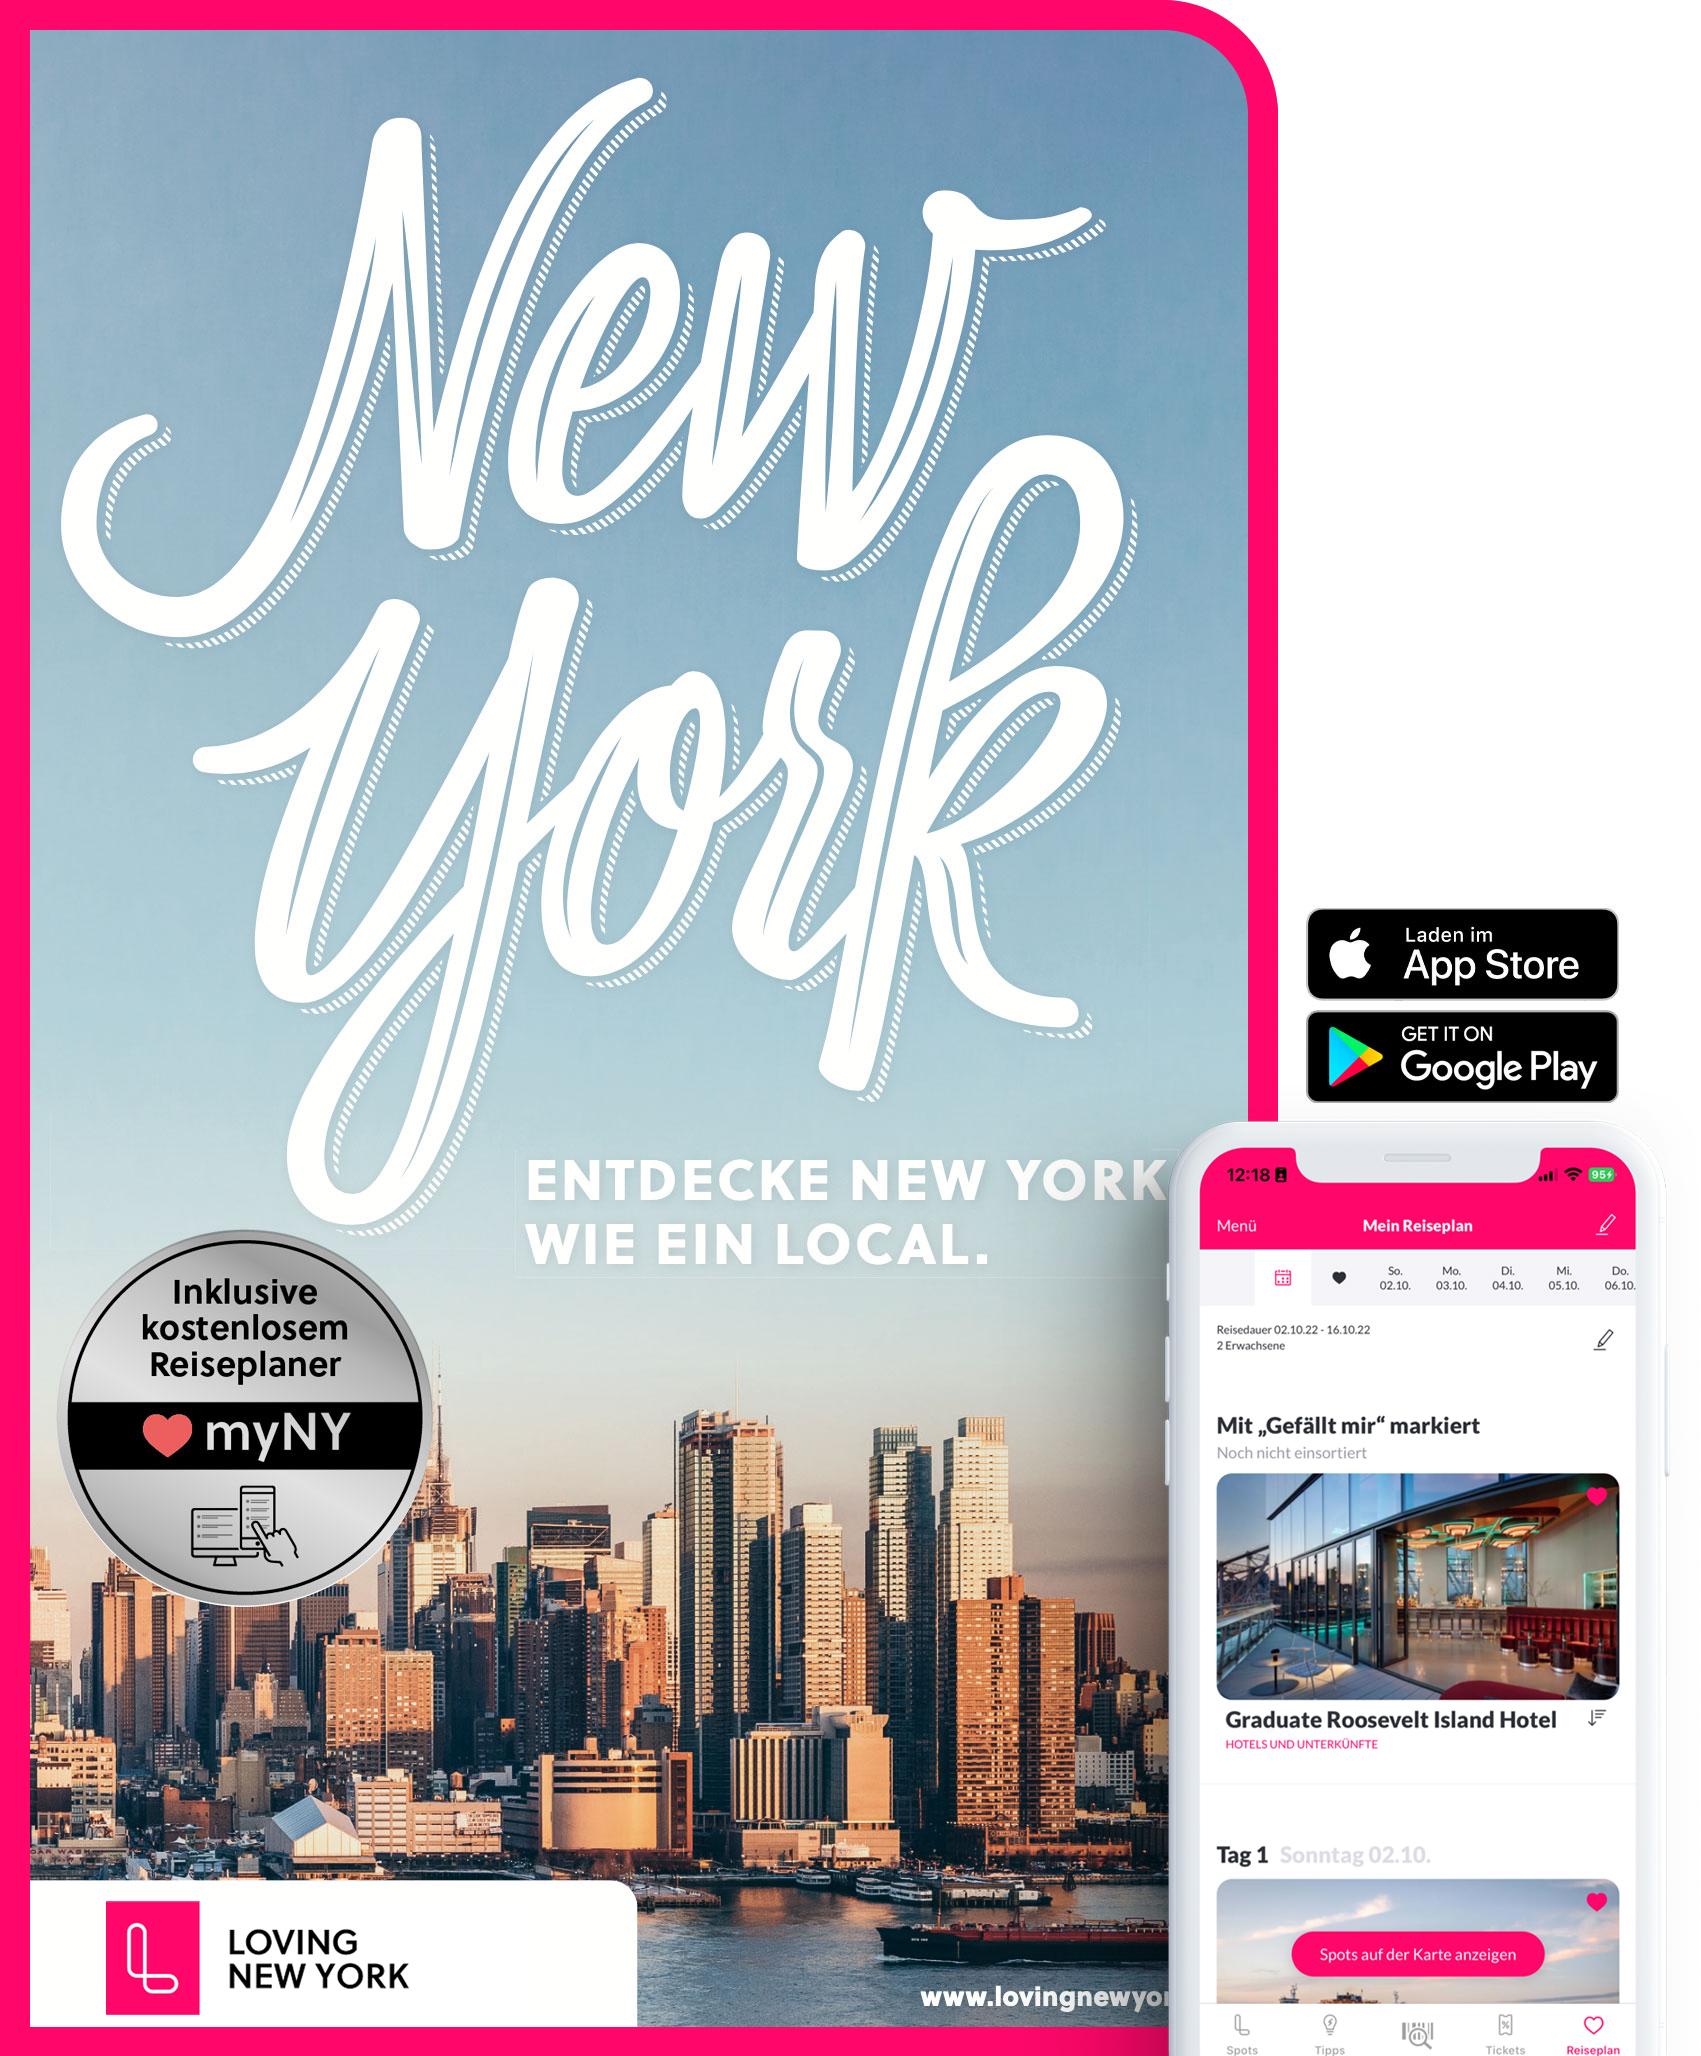 LT New York Entdecke New York wie ein Local: inkl. Insider-Tipps 2018, den schönsten Spots, Events & Touren, Bestenlisten und kostenloser App